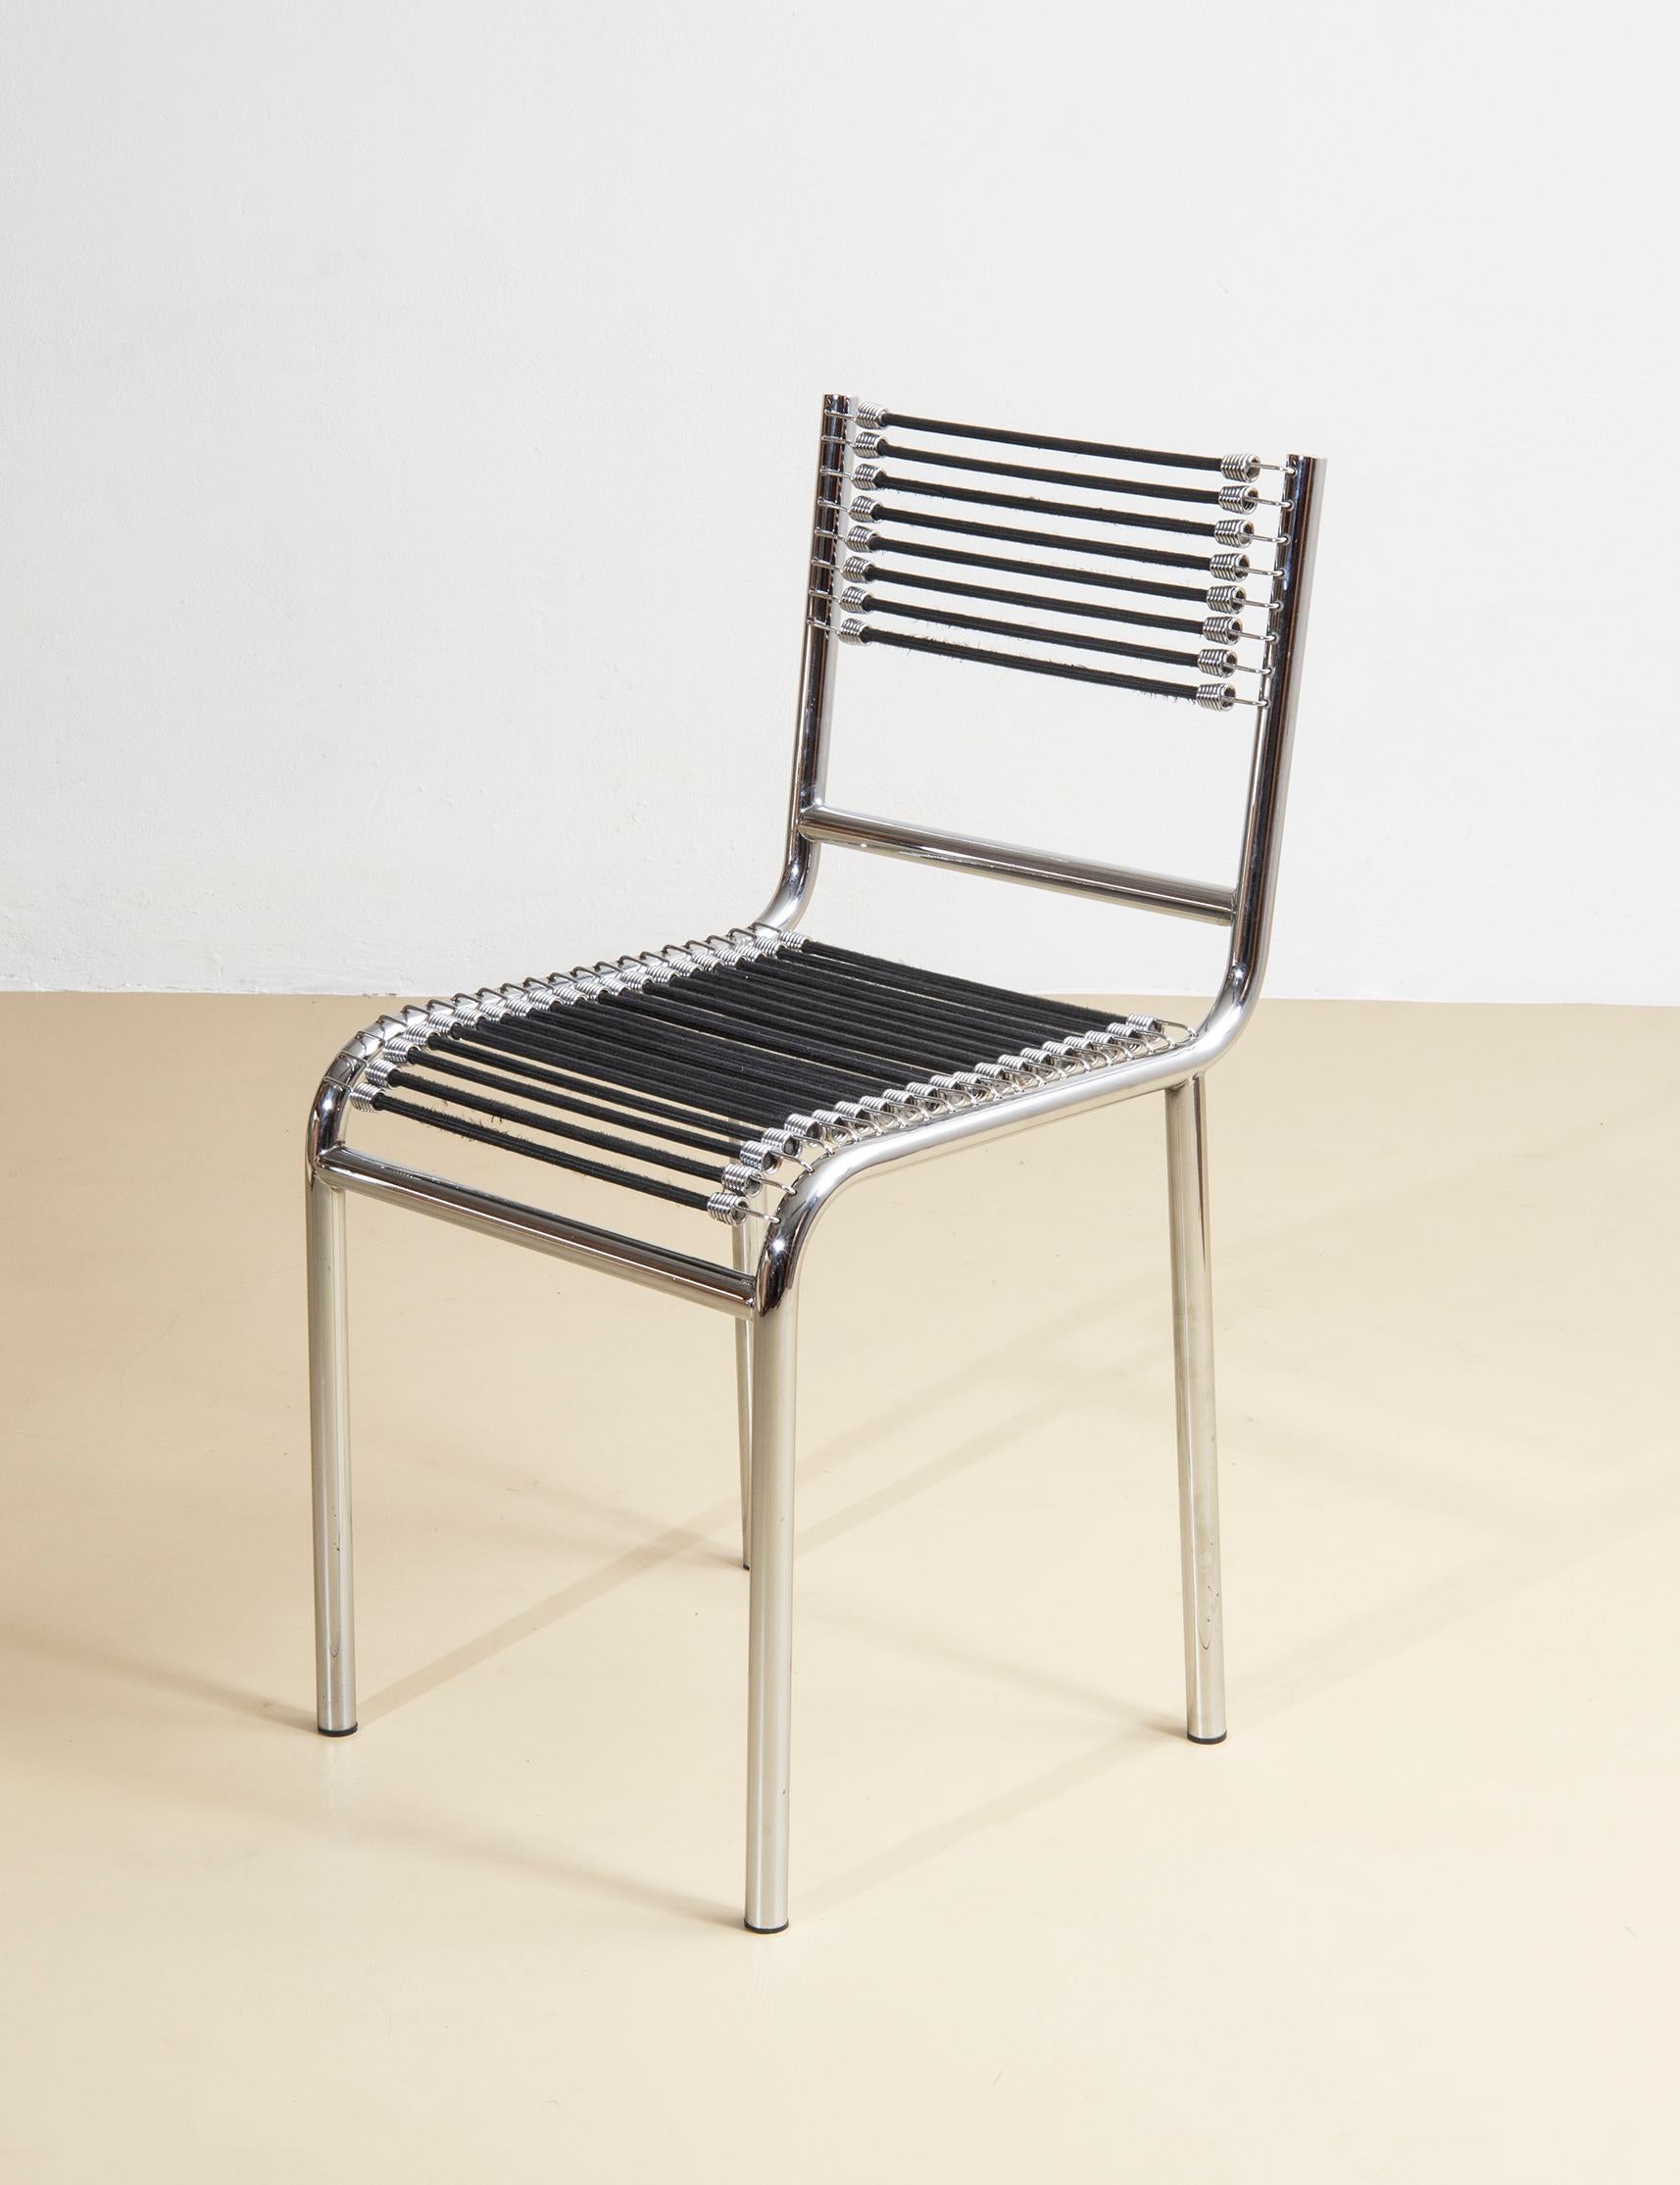 Set di 4 sedie modello 101 di Renè Herbst, progetto del 1928, edite da Pallucco in Italia nel 1980. Presentano una struttura tubolare in acciaio cromato e cinghie elastiche che si agganciano alla struttura con molle cromate. 